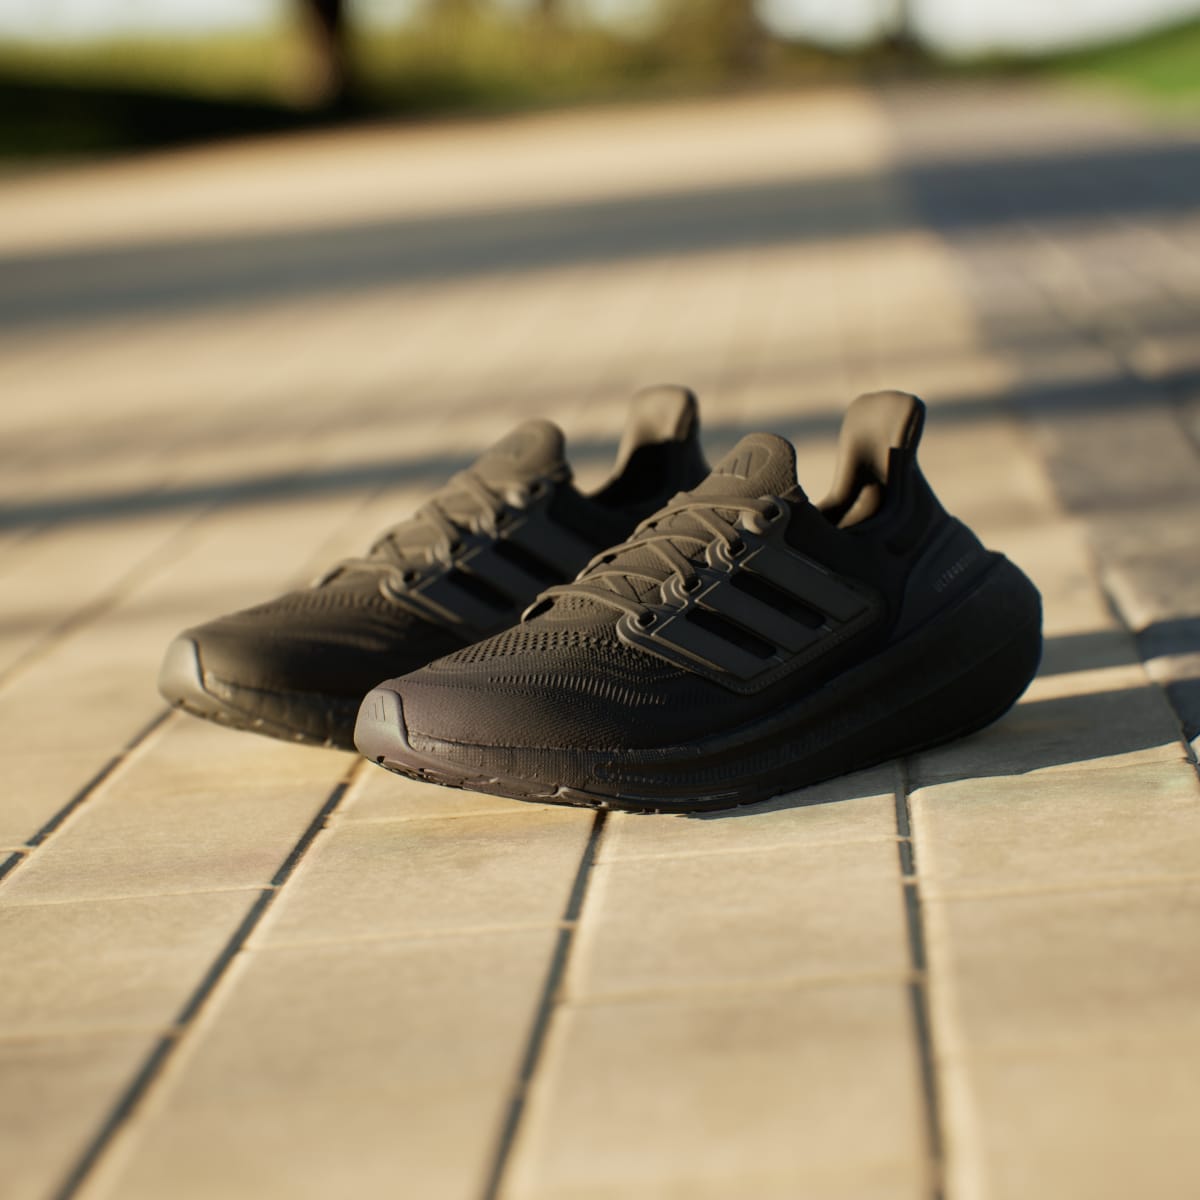 Adidas Ultraboost Light Running Shoes. 7